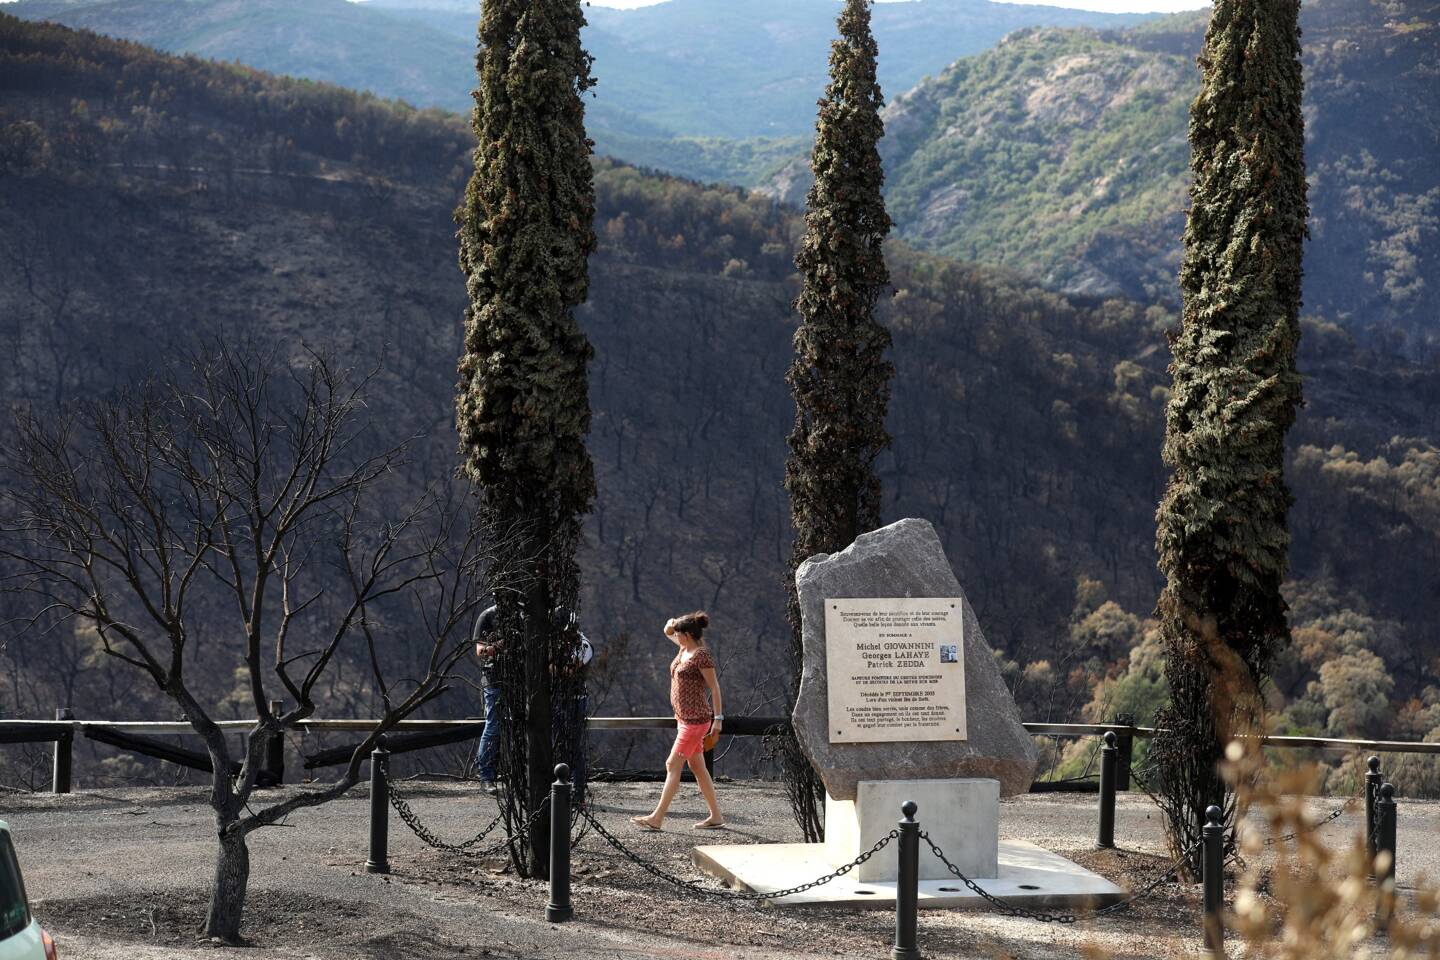 L'incendie du 16 août a emprunté le même chemin que celui du 31 août 2003, dans lequel trois pompiers avaient péri: le bas des arbres entourant la stèle qui leur rend hommage est calciné et les collines alentour témoignent du passage du feu.